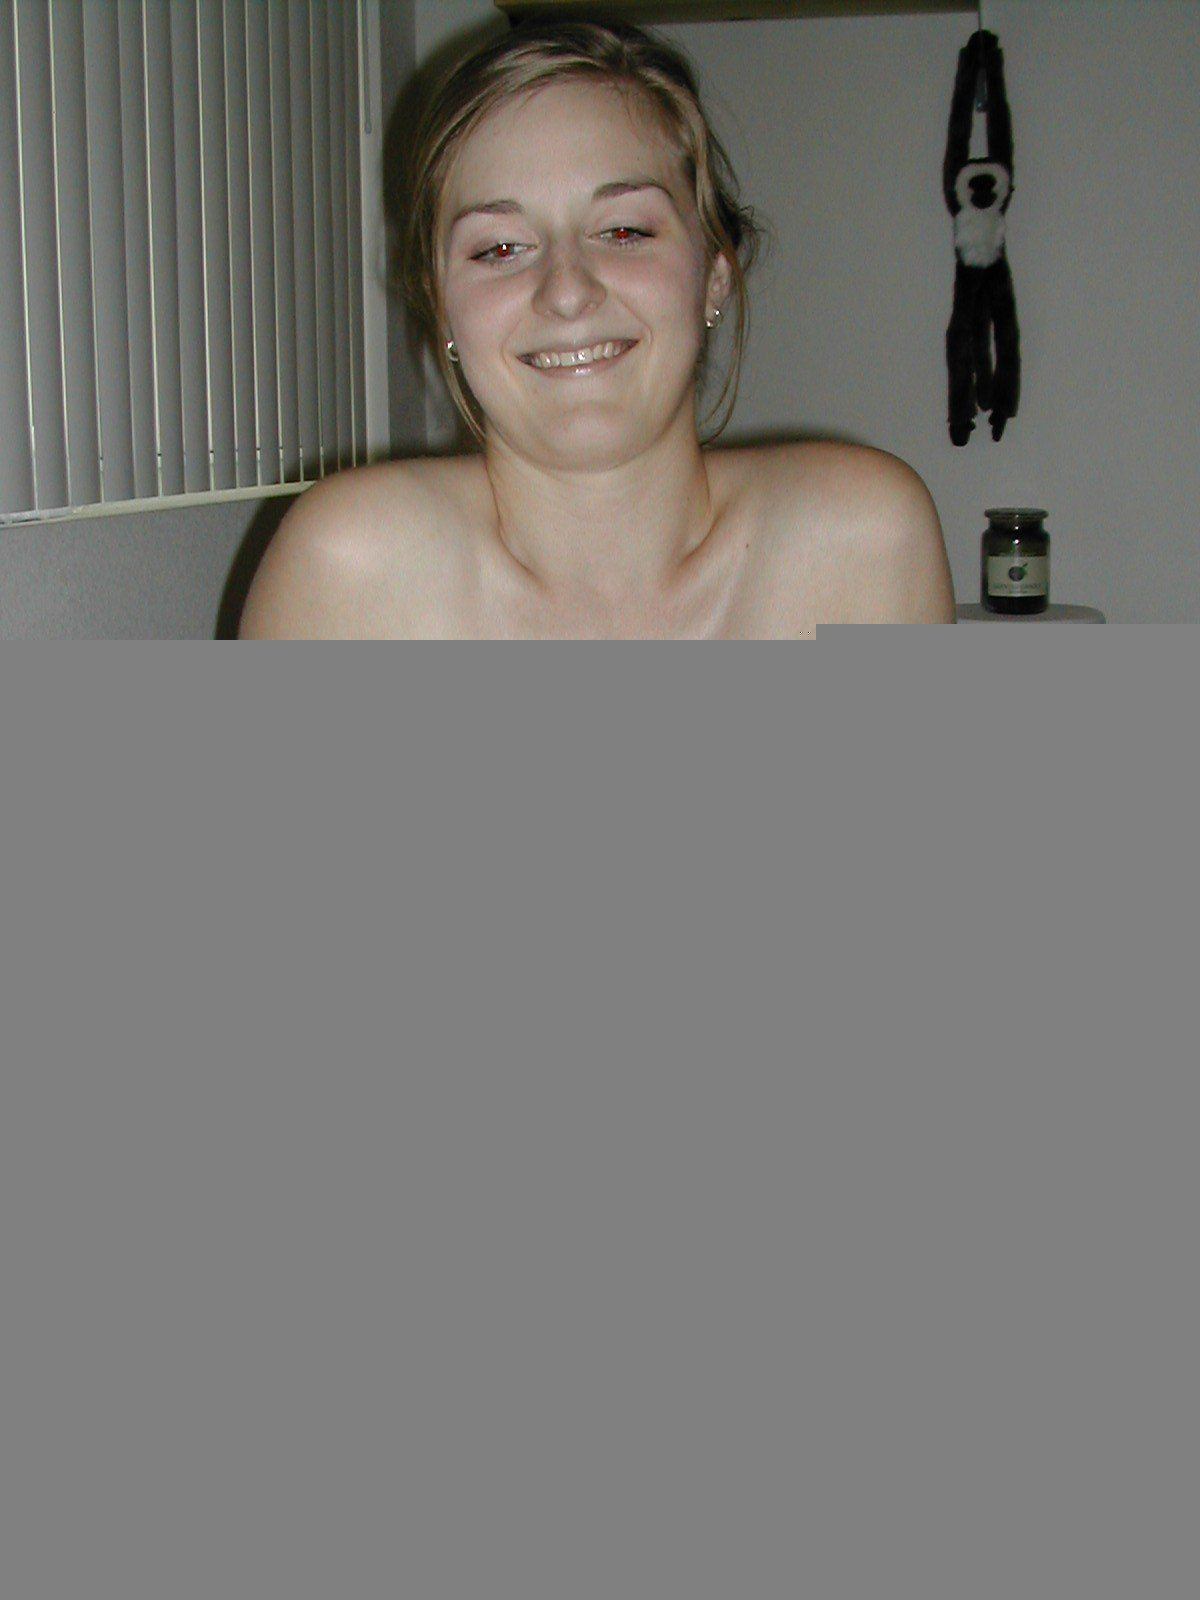 Pamela anderson nude bathroom